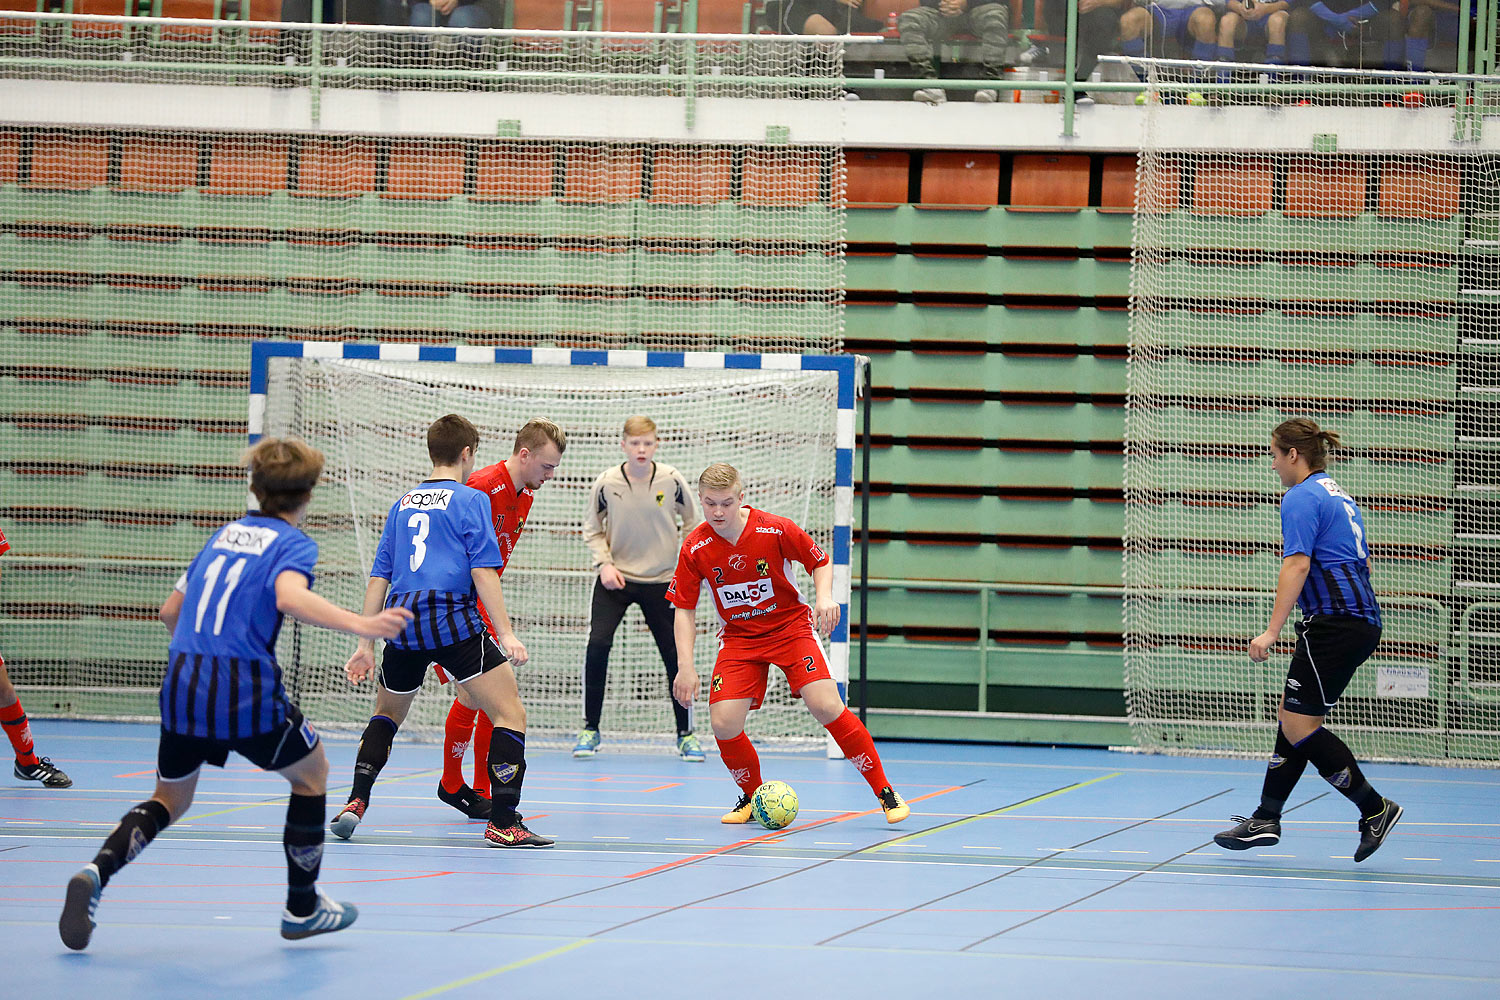 Skövde Futsalcup Herrjuniorer Ulricehamns IFK-Töreboda IK,herr,Arena Skövde,Skövde,Sverige,Skövde Futsalcup 2016,Futsal,2016,141917